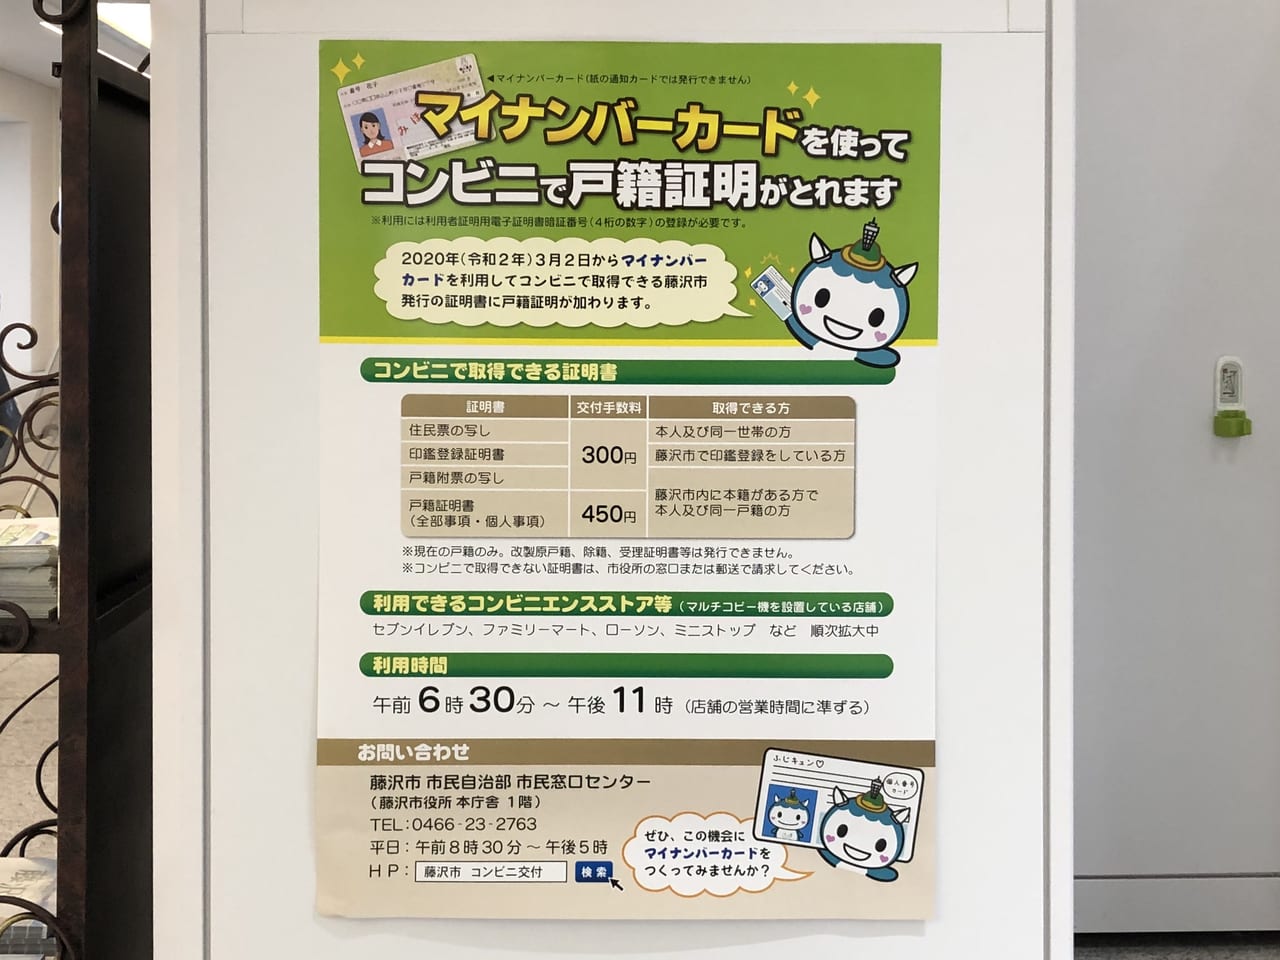 藤沢市 2020年3月2日から戸籍証明書もコンビニで取得できるようになりました マイナンバーカード利用 号外net 藤沢市